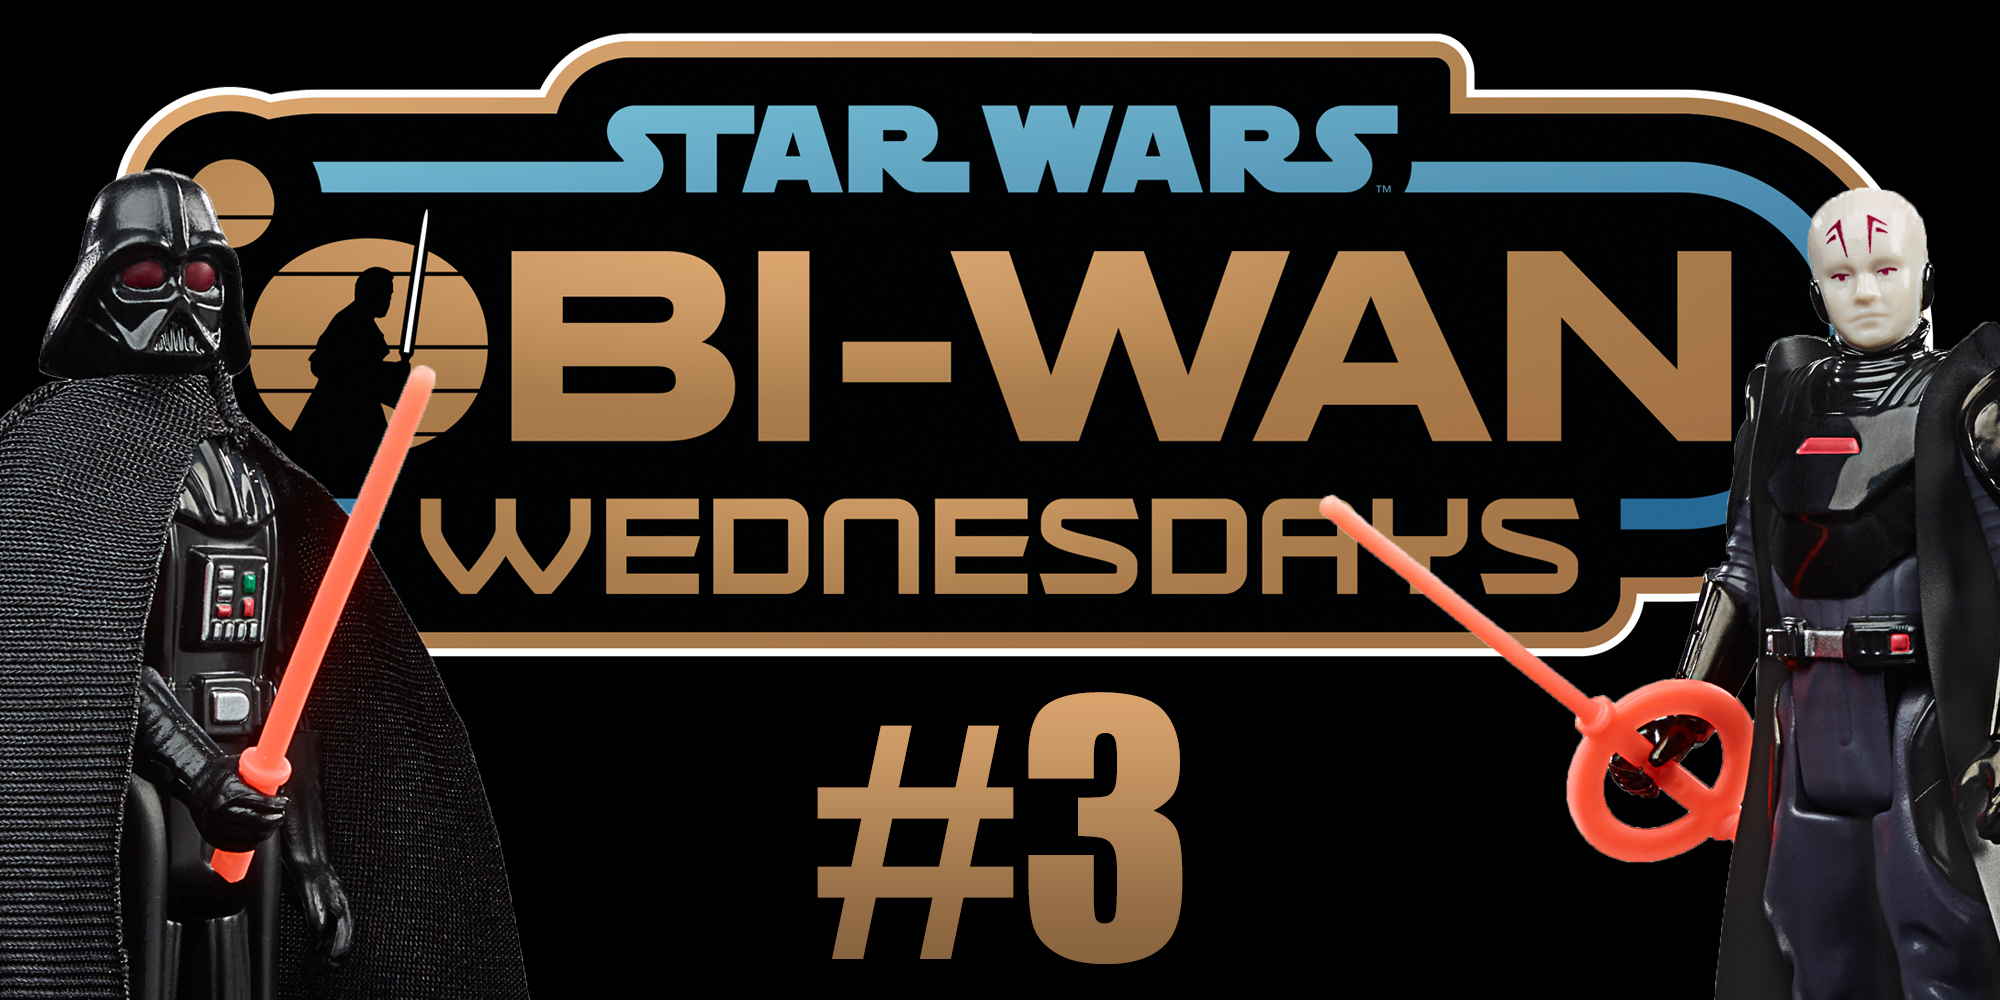 Obi-Wan Wednesday